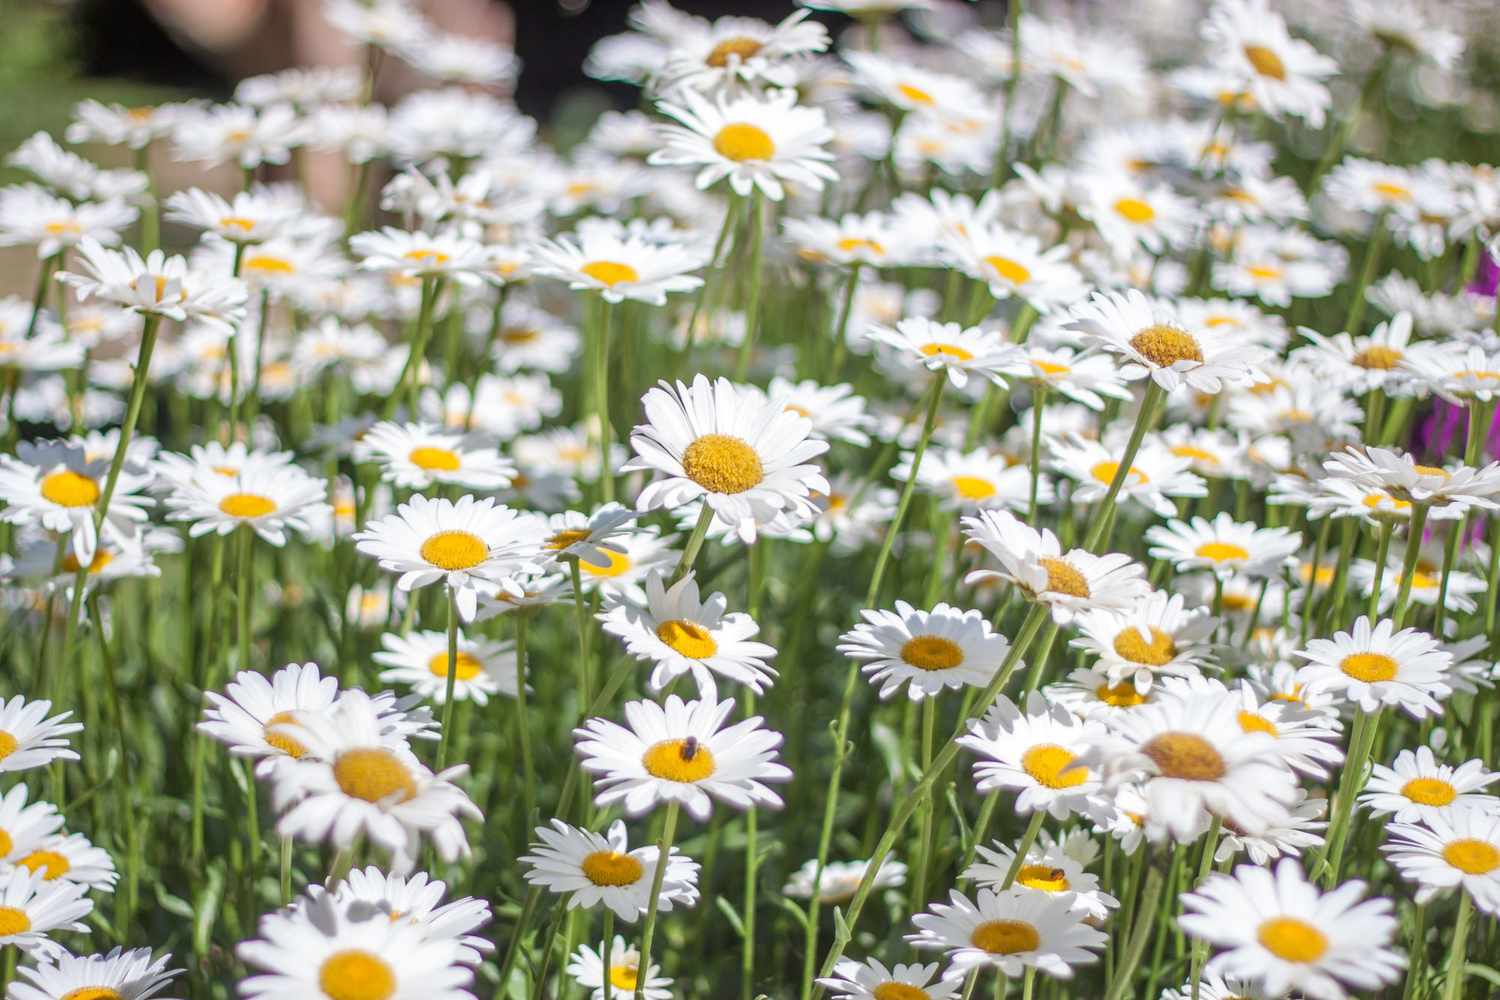 Sea of Daisy flowers in a garden